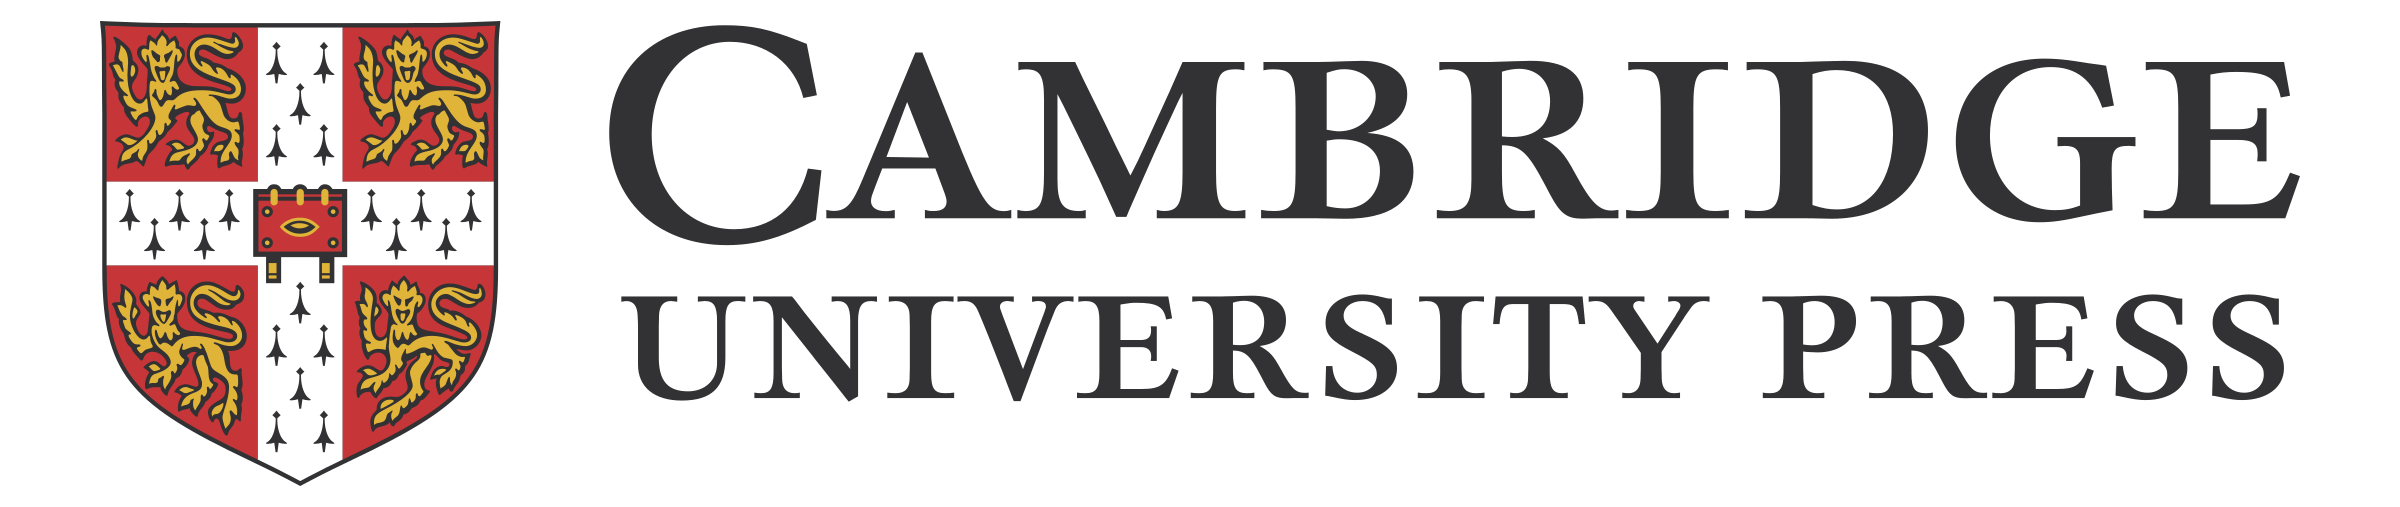 cambridge logo transparent